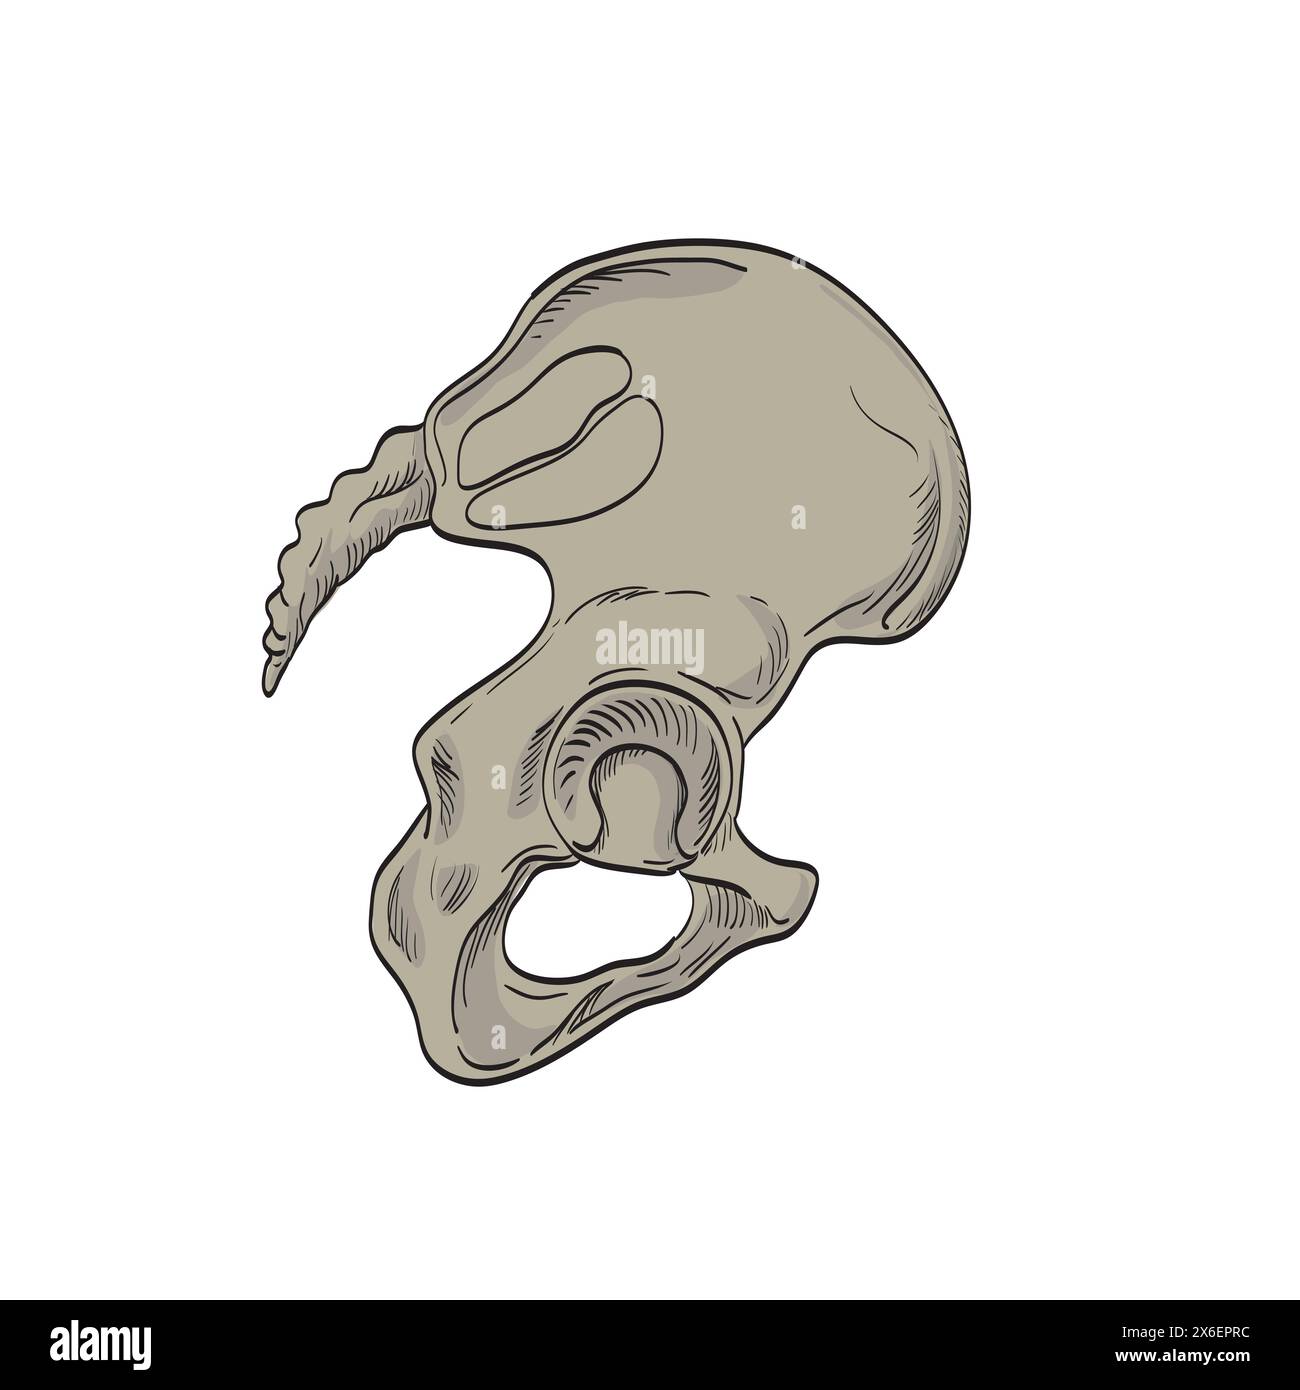 Illustrazione medica disegno delle articolazioni sacroiliache che collegano la pelvi o l'ilio e la colonna vertebrale inferiore o sacro visto dalla sezione trasversale laterale sull'isol Illustrazione Vettoriale